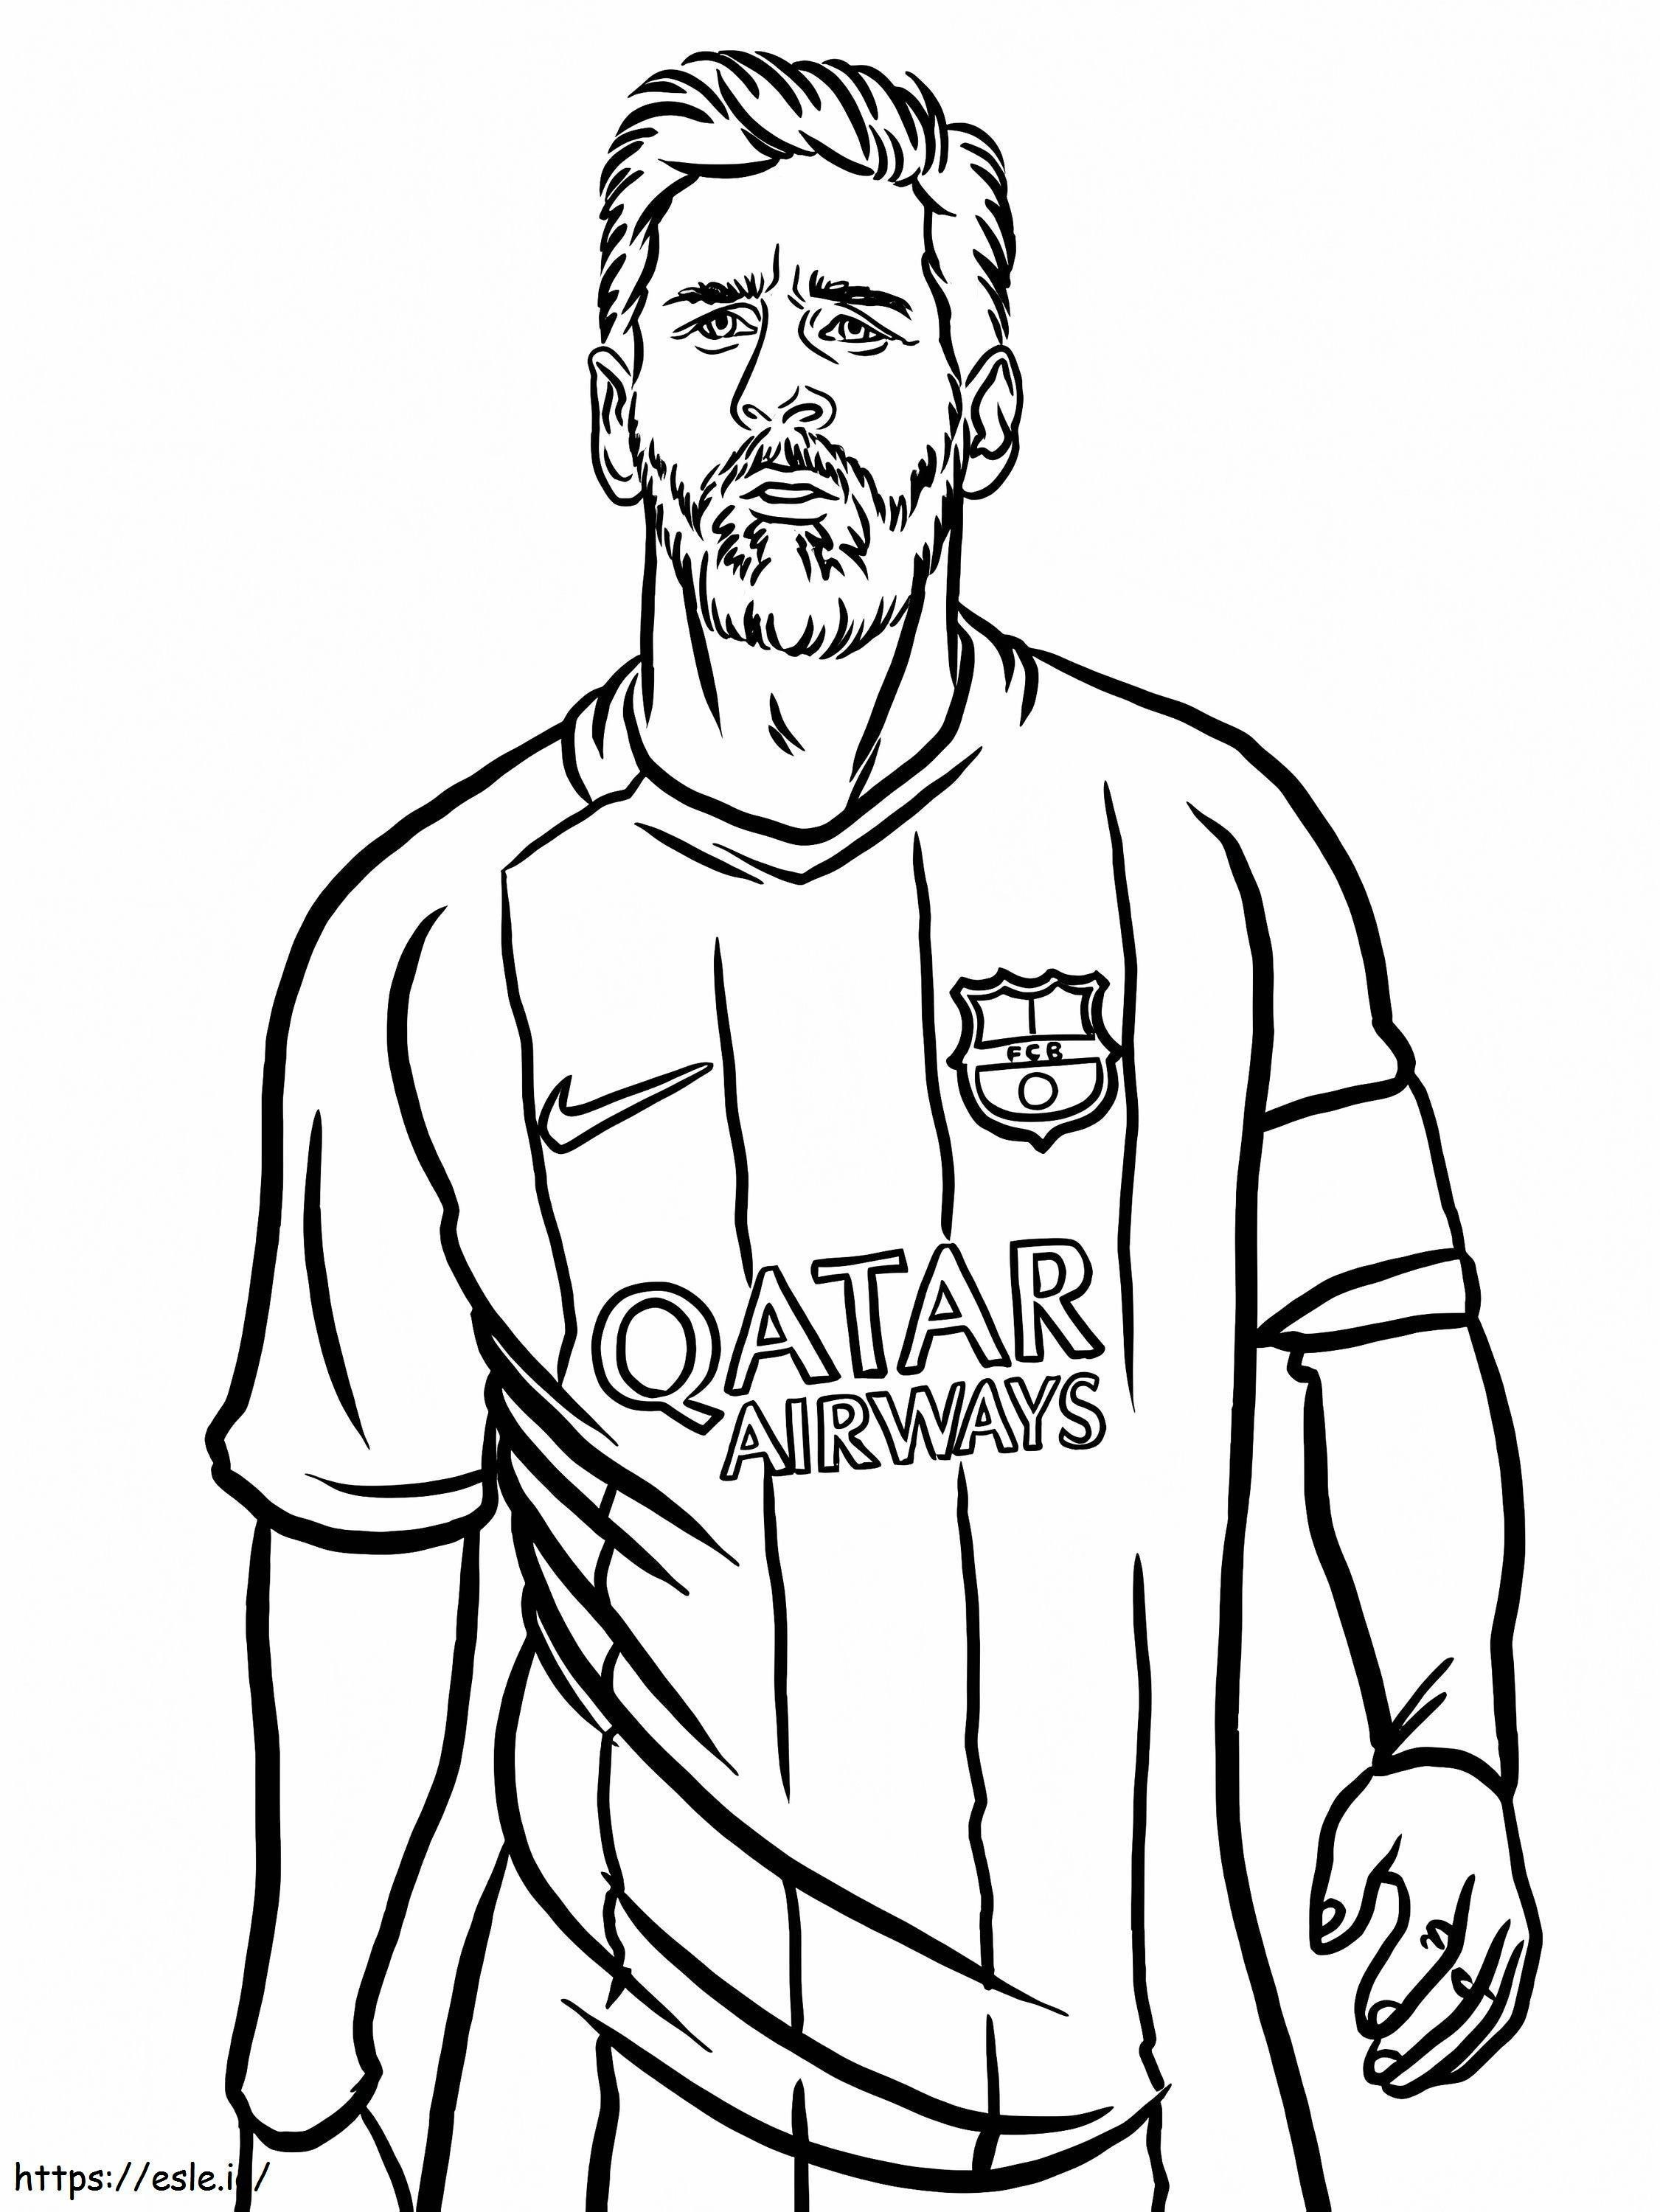 Ritratto di Lionel Messi da colorare